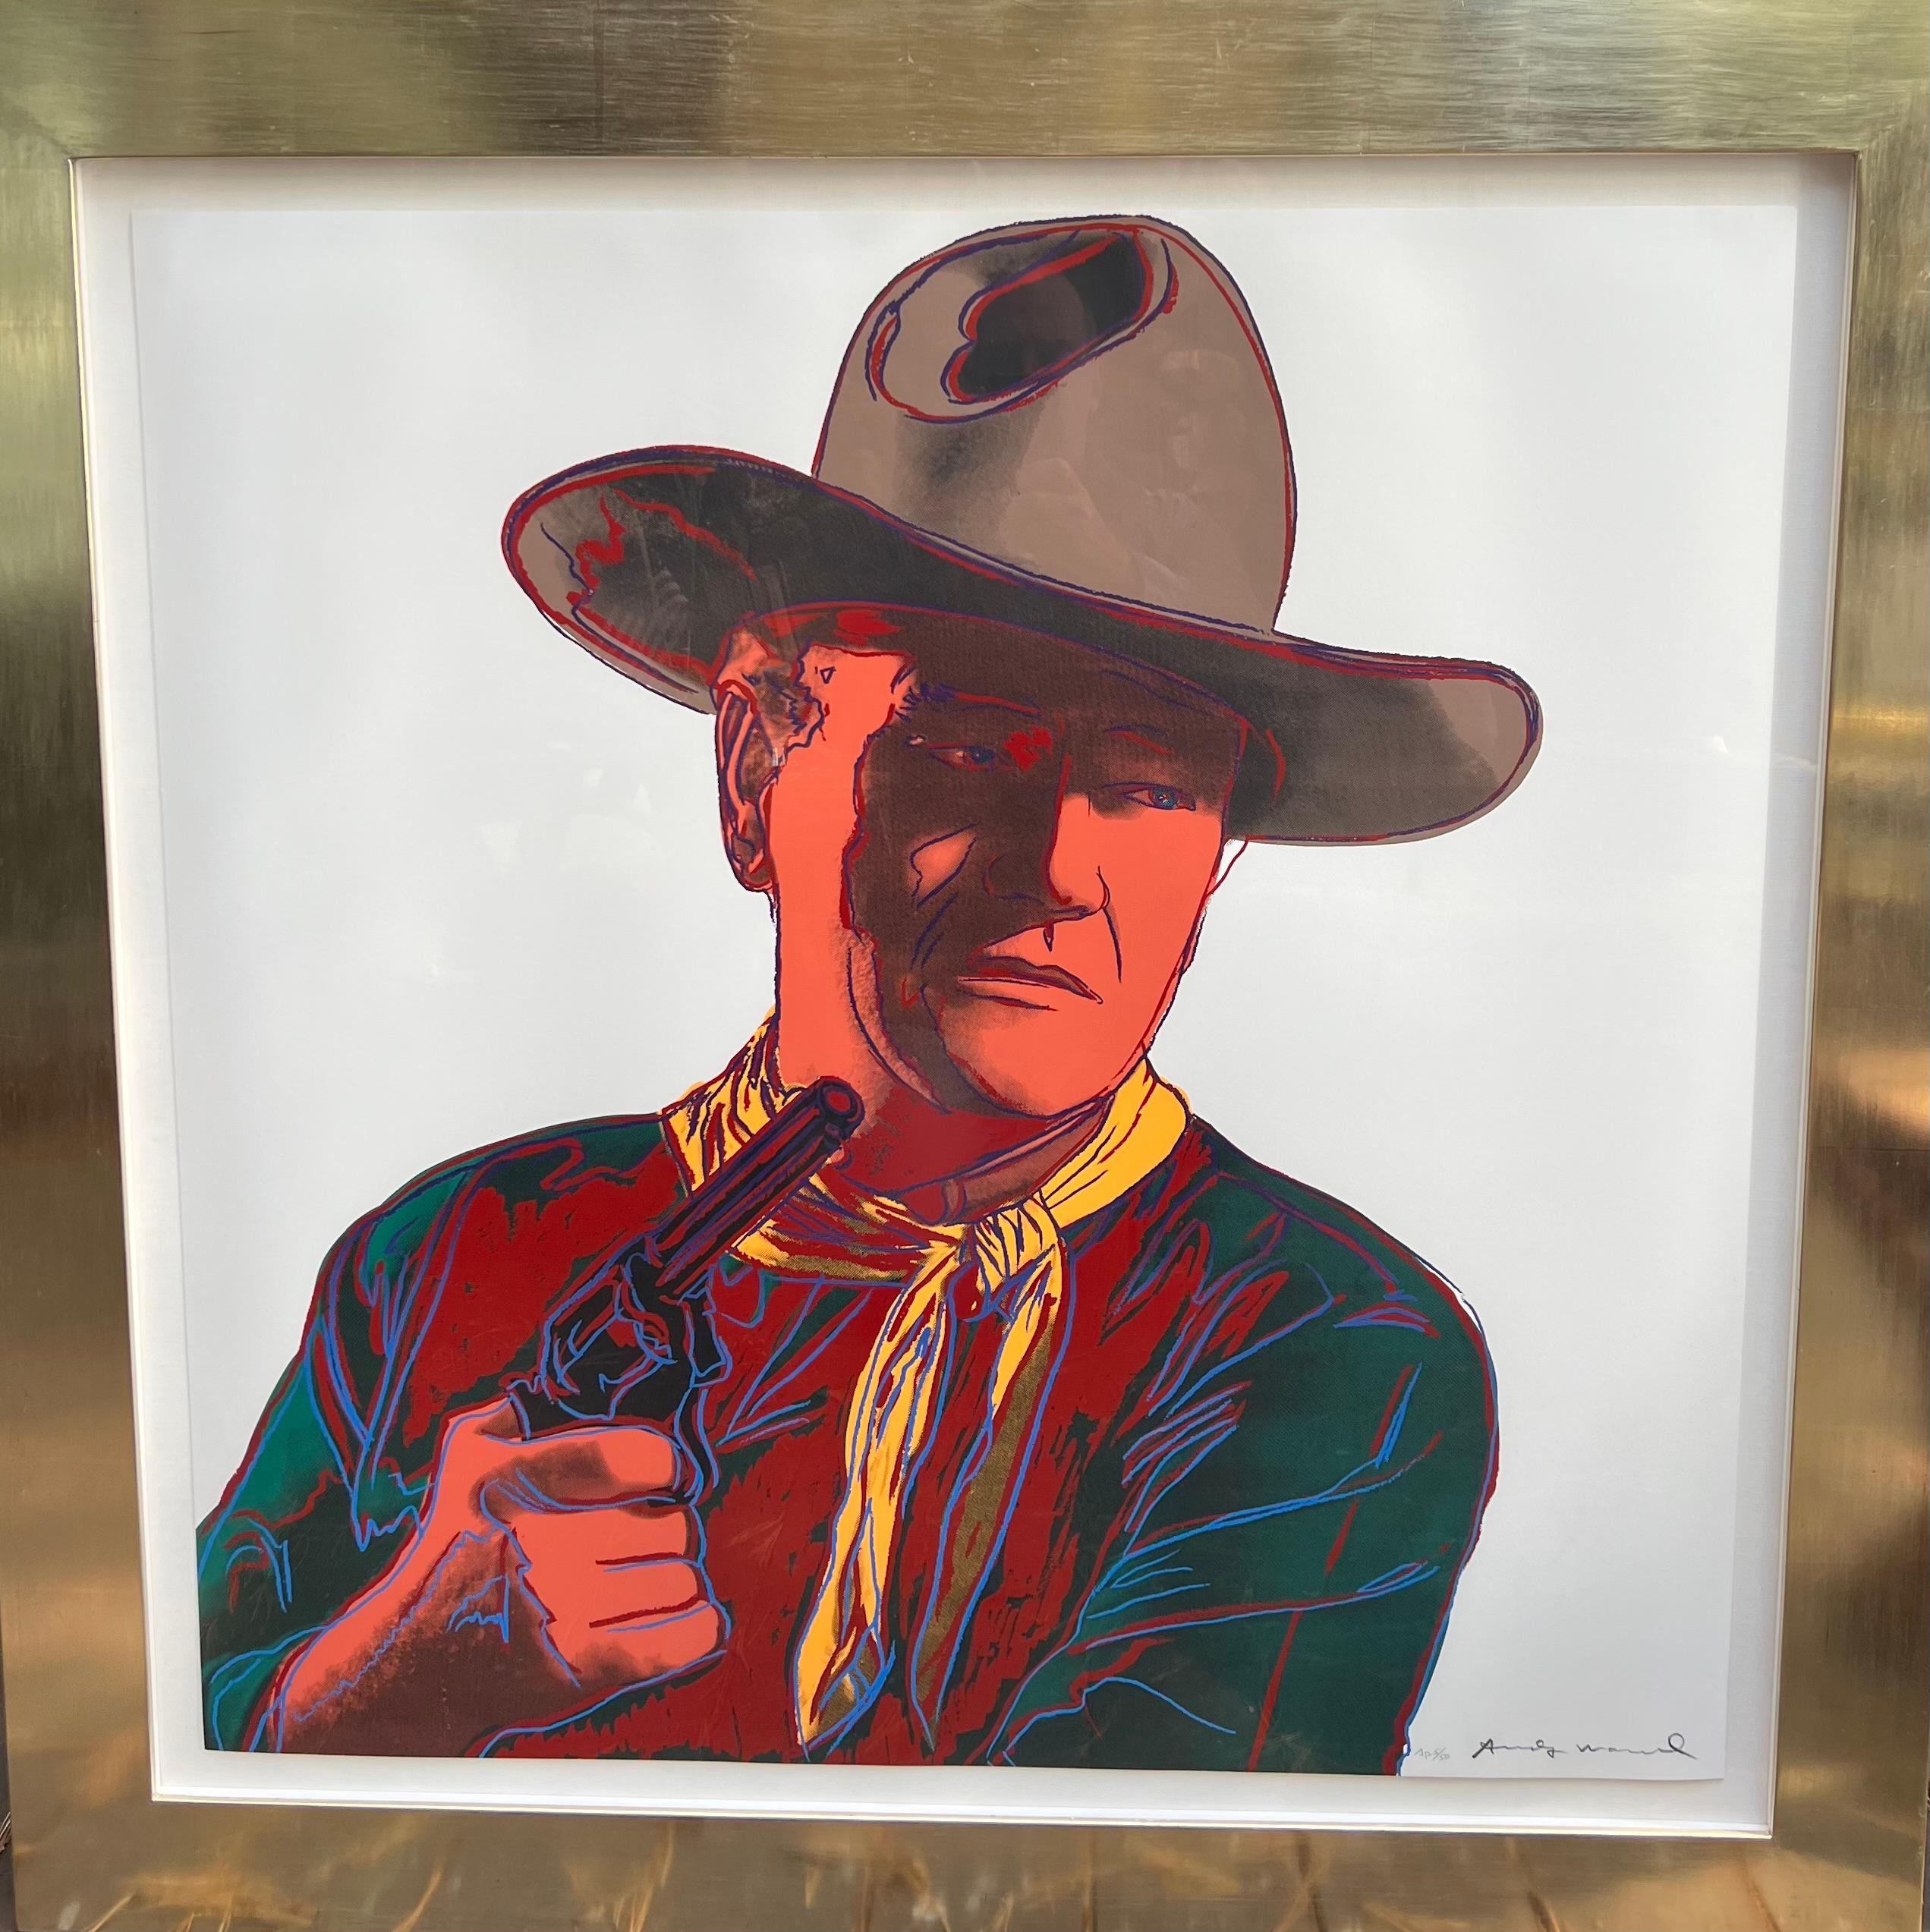 John Wayne, Cowboys and Indians, 1986 - Print by Andy Warhol